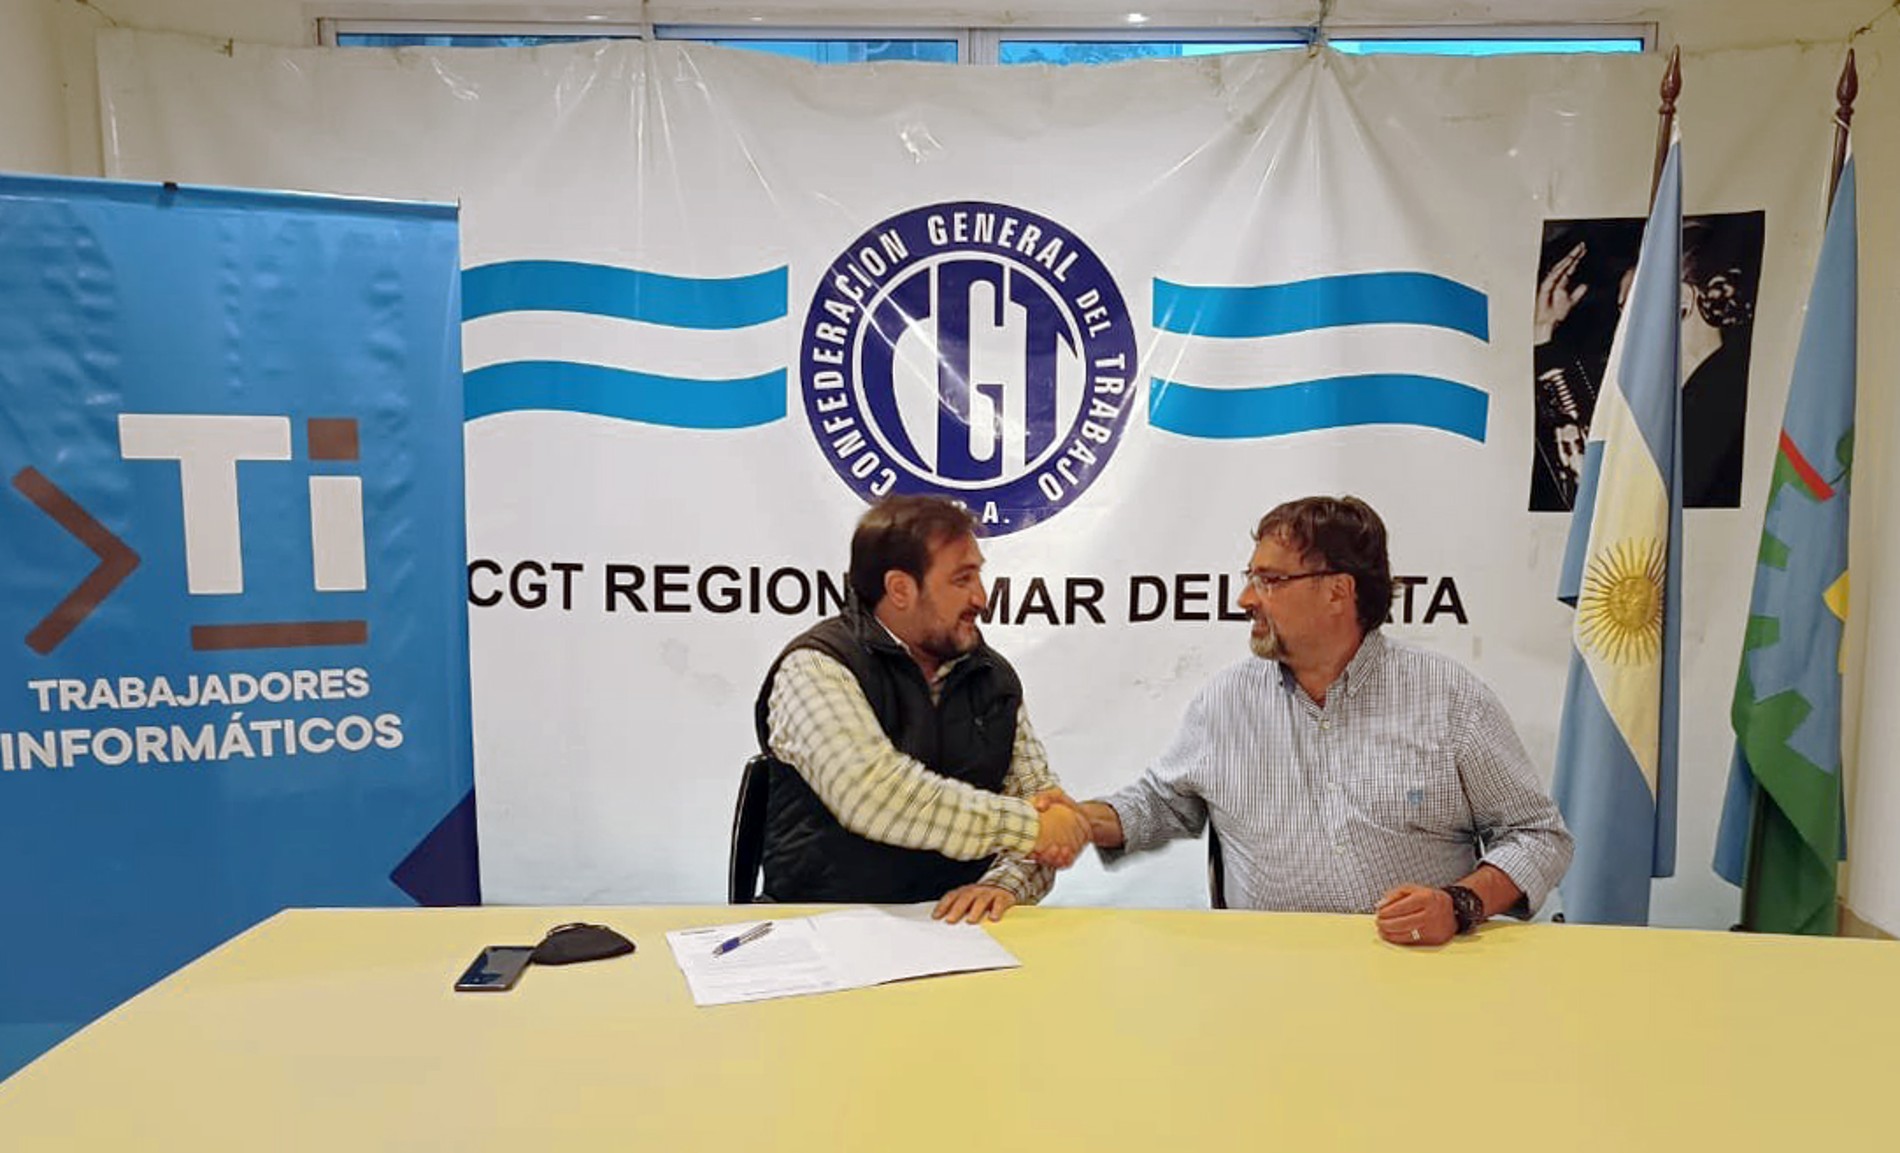 Imagen de saludo luego de la firma de la aceptación de cargo de Sergio Salinas Porto y Ezequiel Tosco